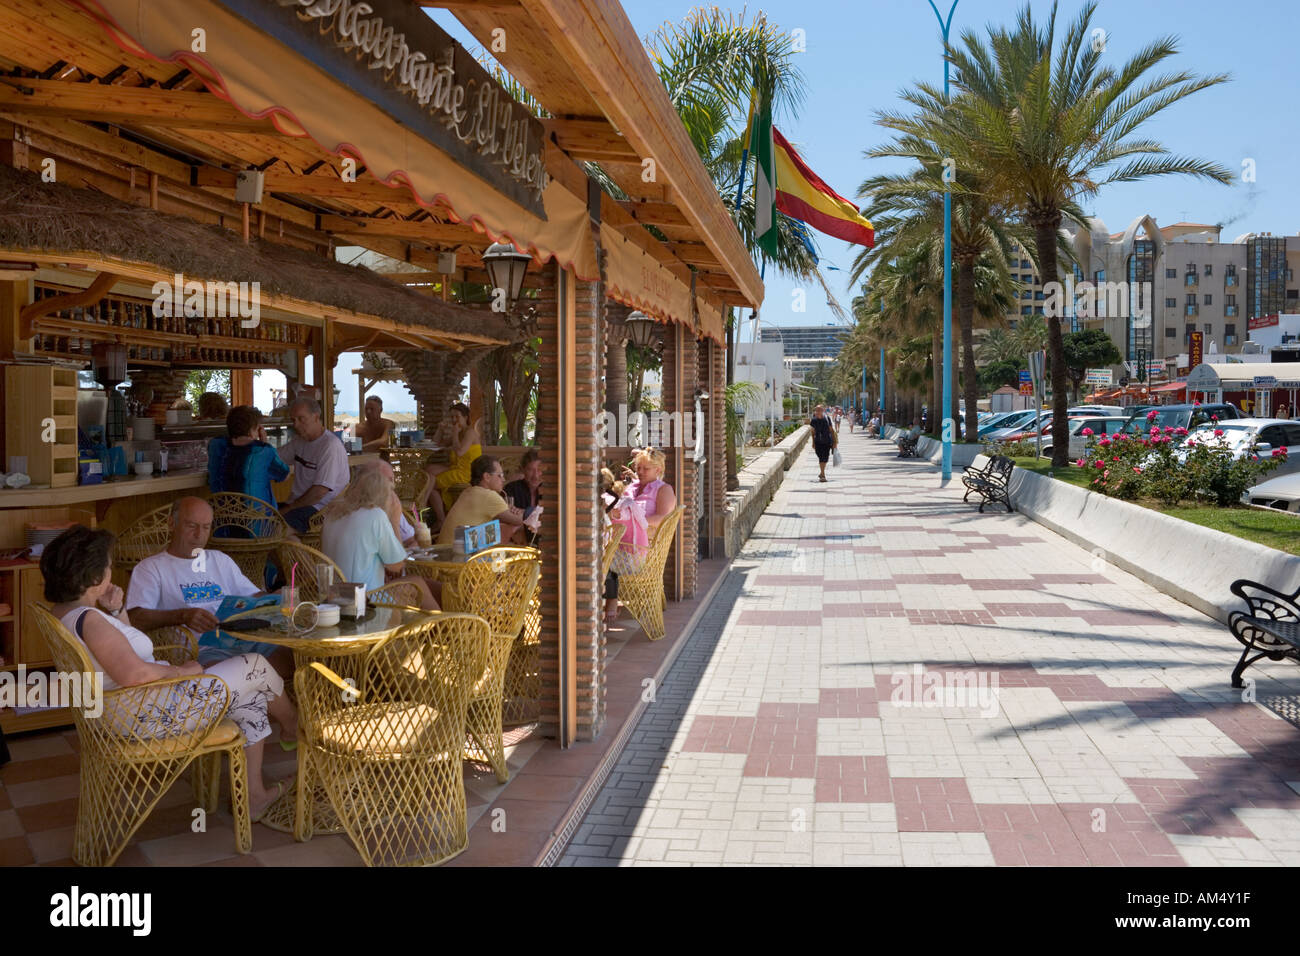 Chiringuito (local cafe) on the promenade, Playa del Bajondillo/Playa de Playamar, Torremolinos, Costa del Sol, Andalucia, Spain Stock Photo